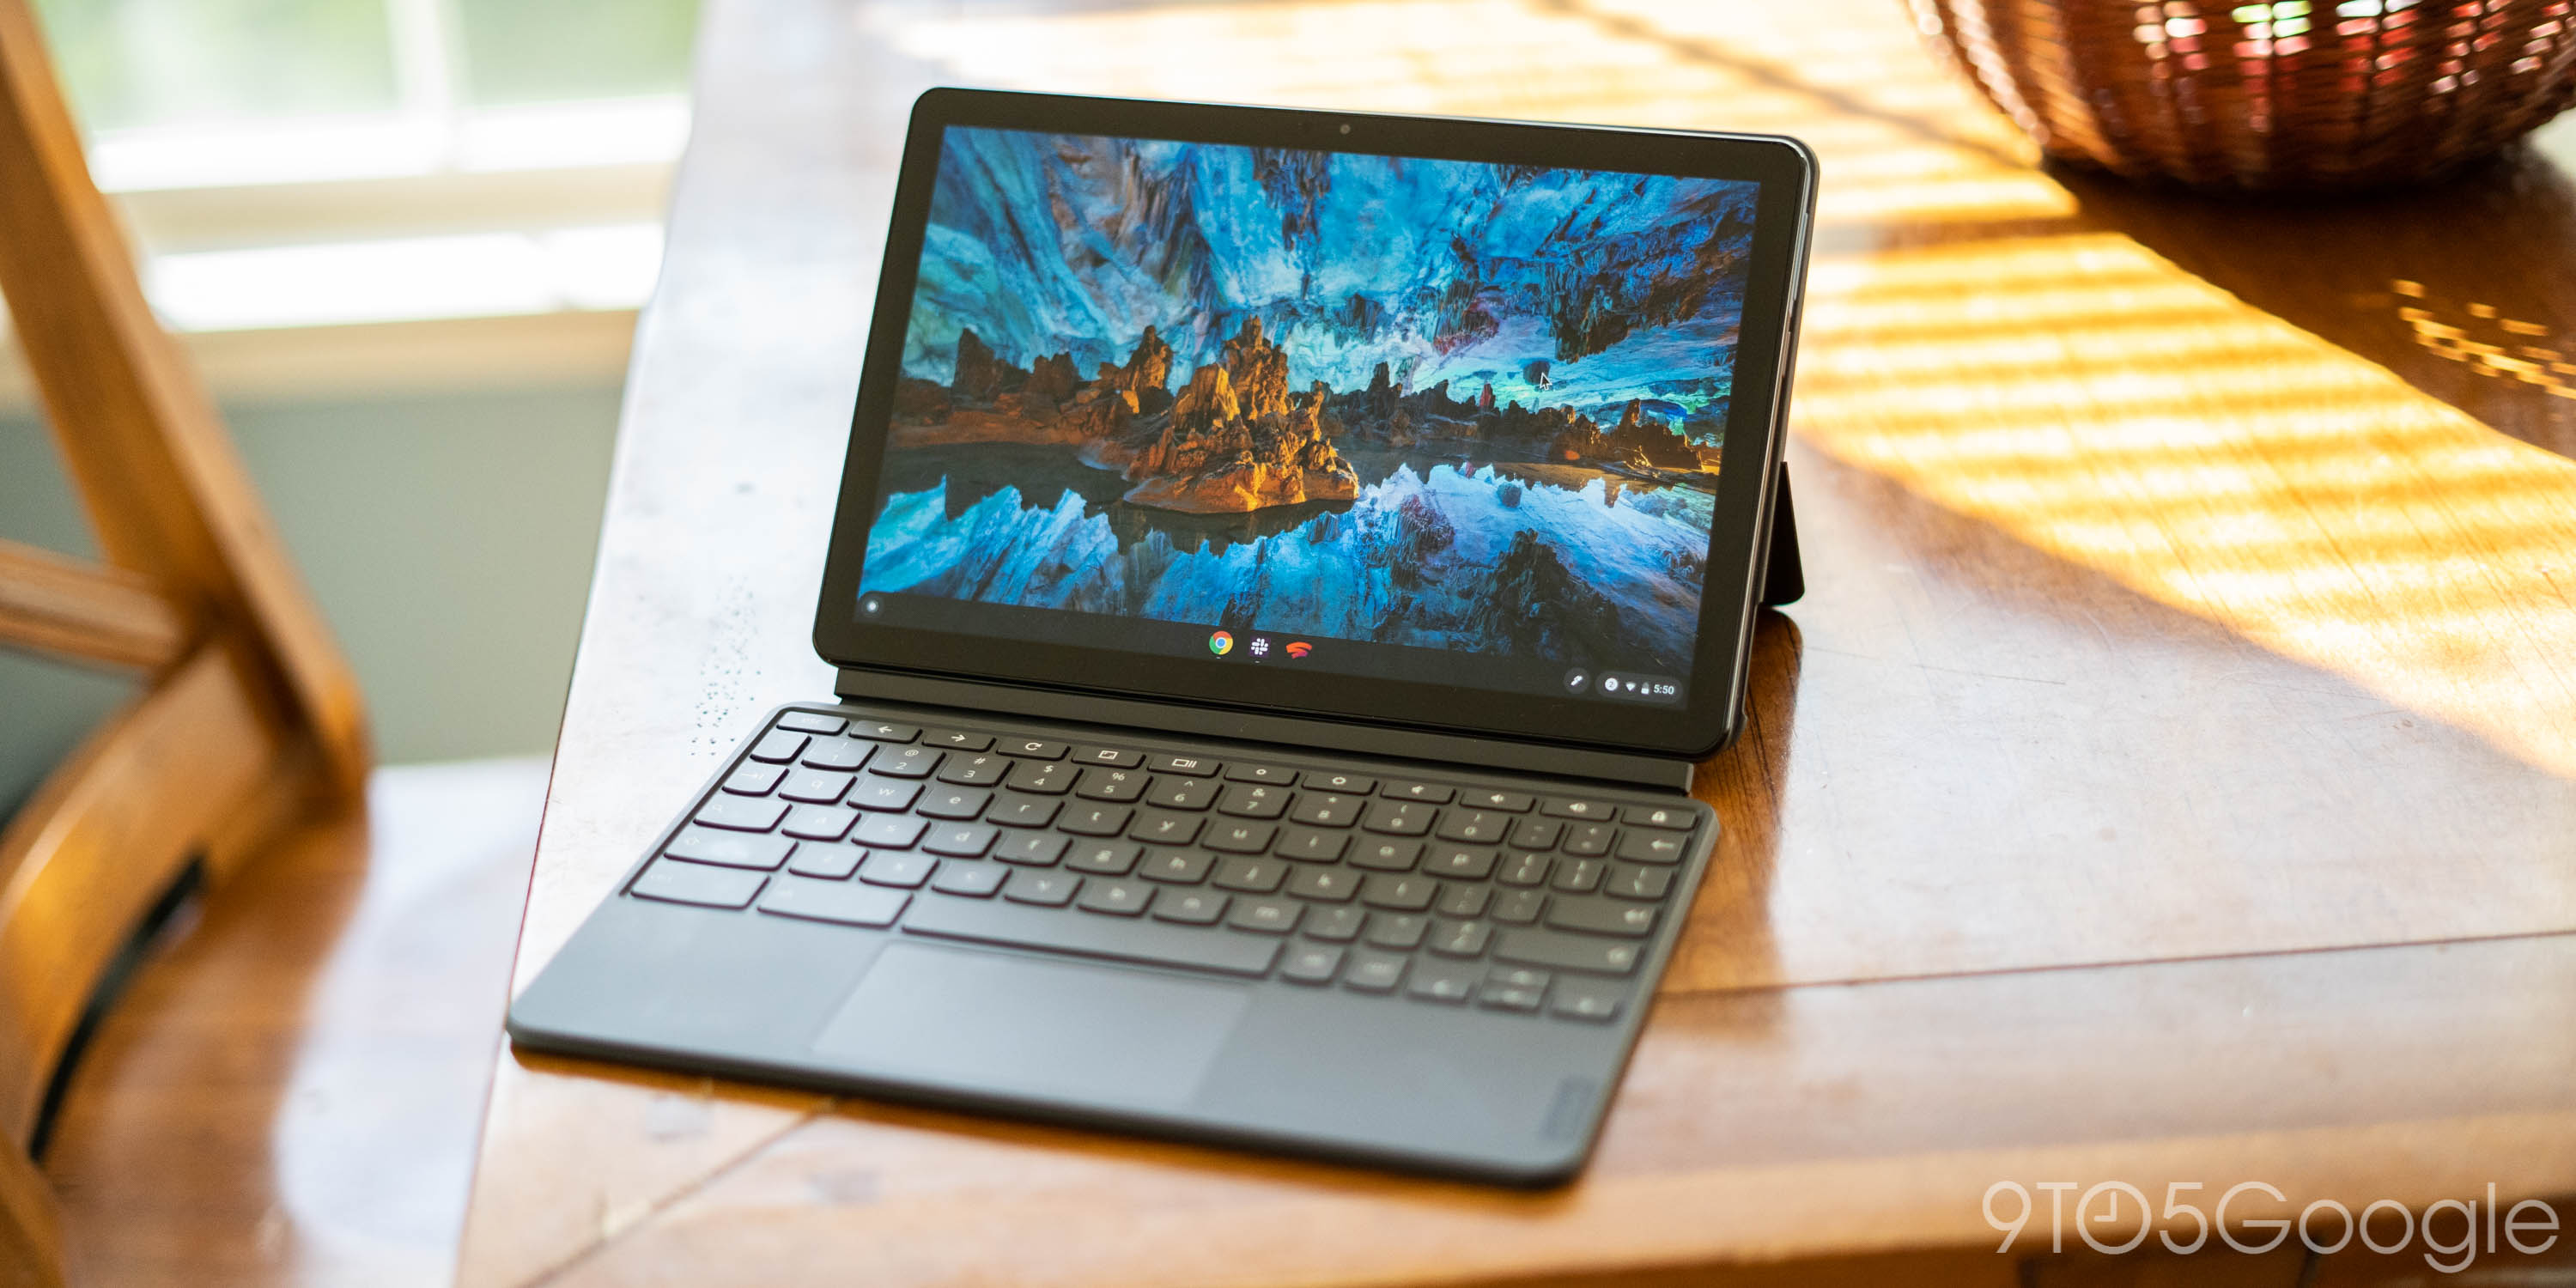 Lenovo IdeaPad Duet: Is the Chrome OS tablet any good